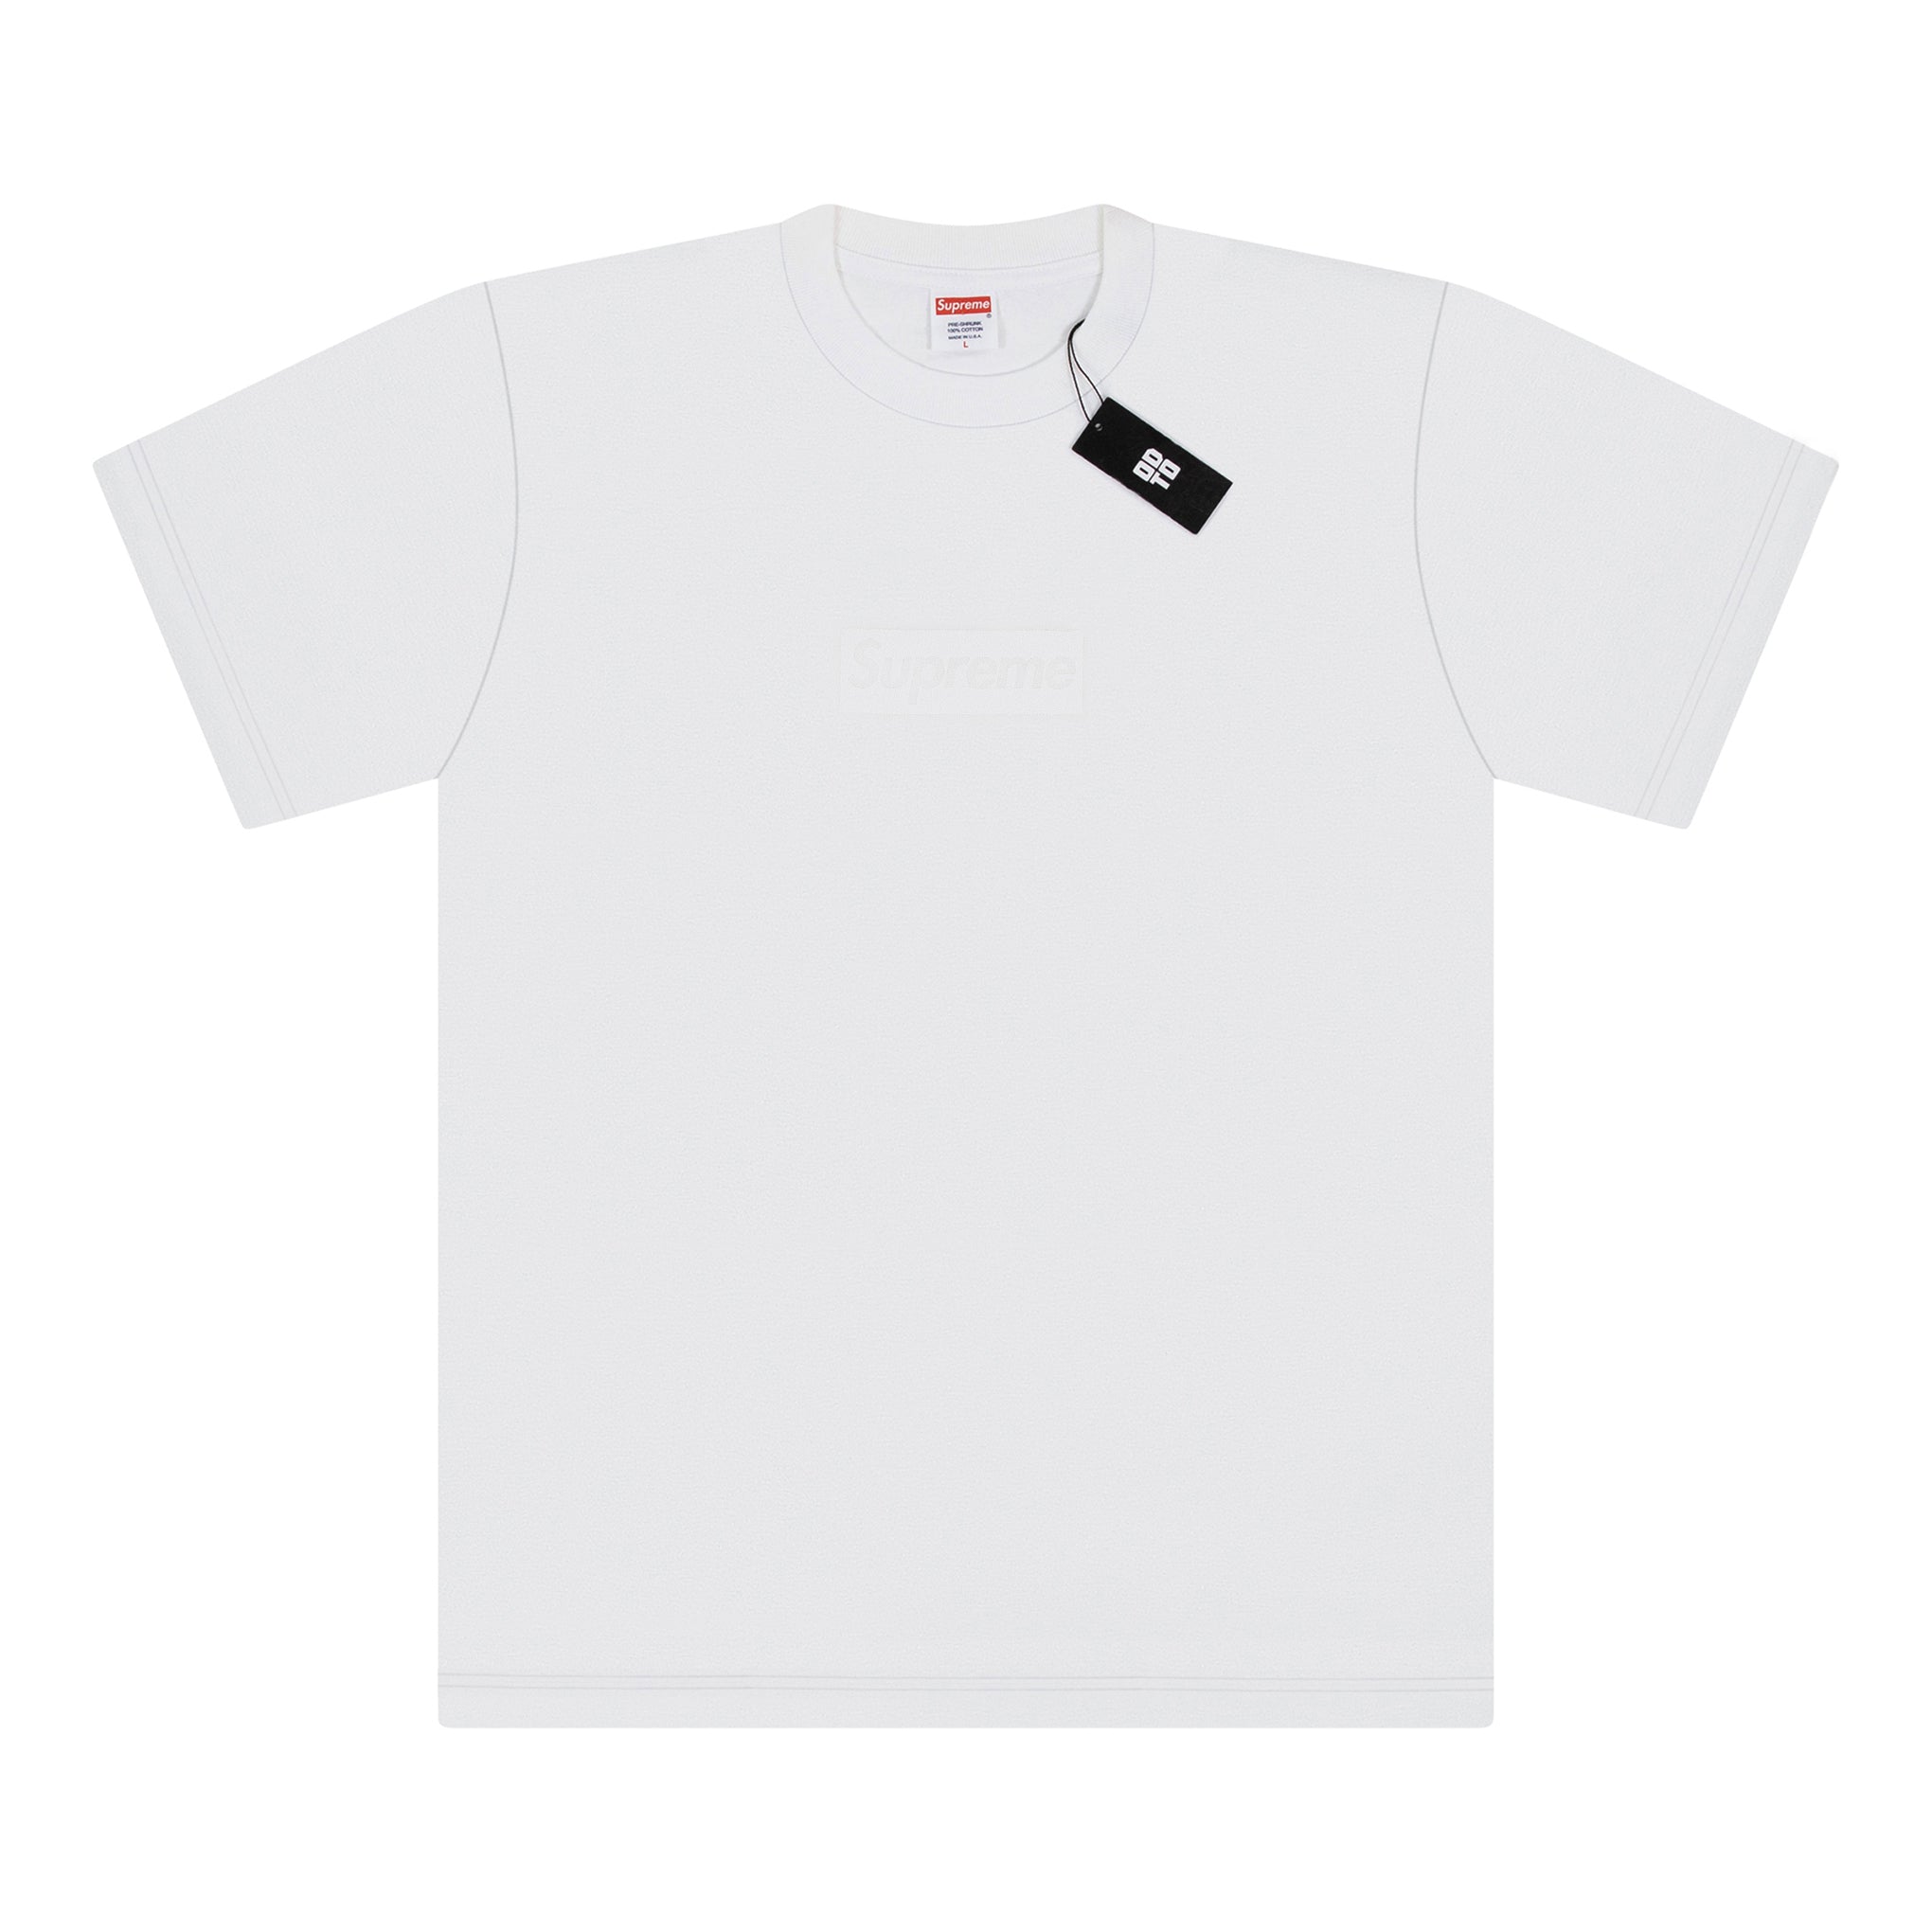 白色 SUPREME BOX LOGO T 恤